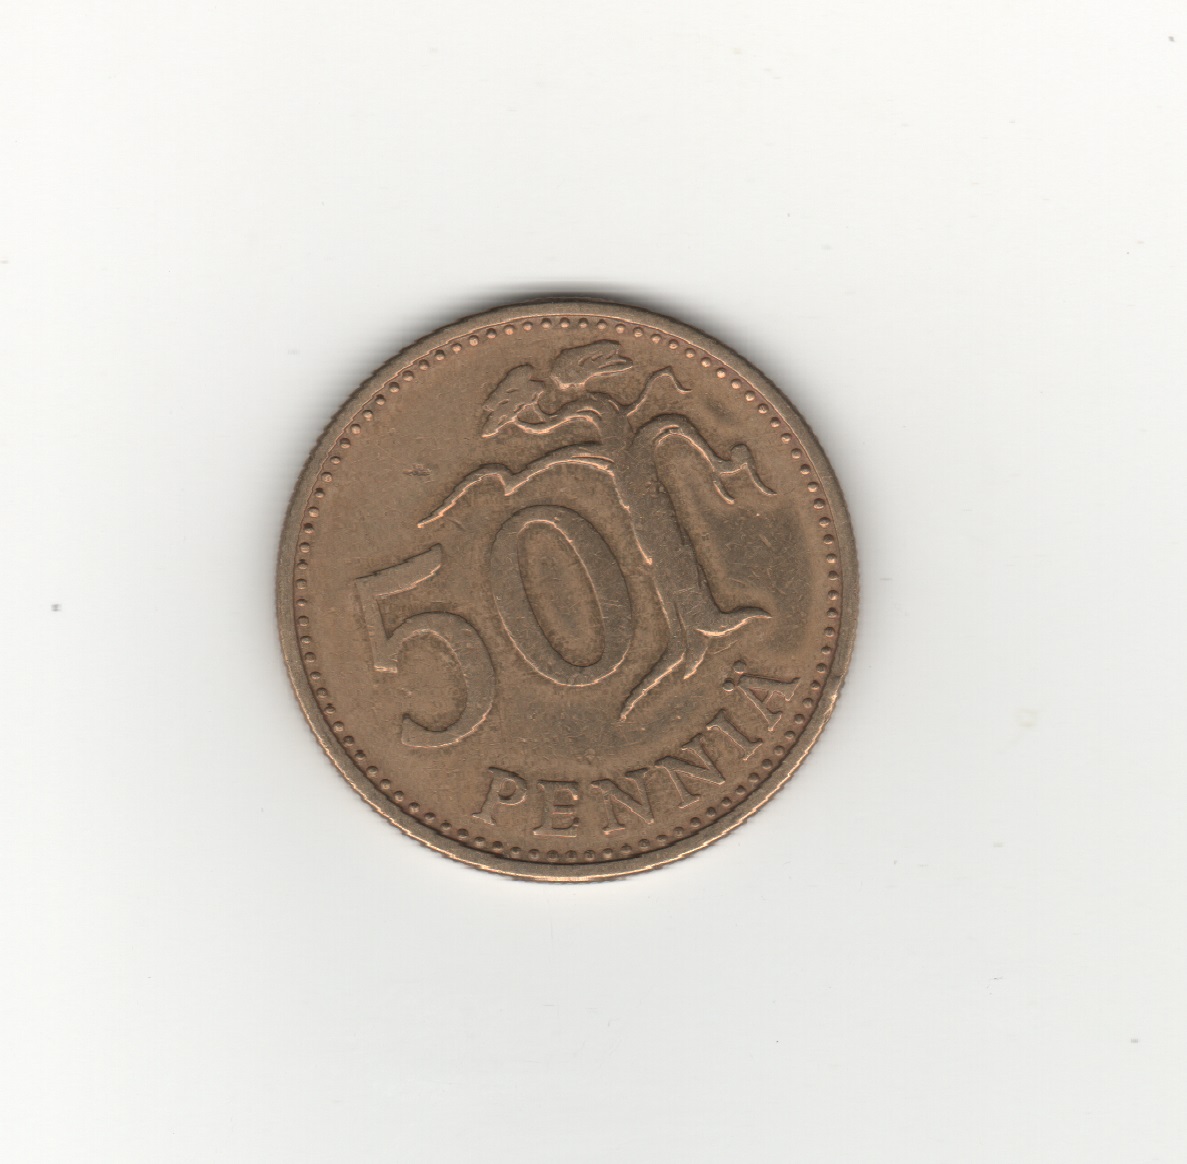  Finnland 50 Penniä 1963   